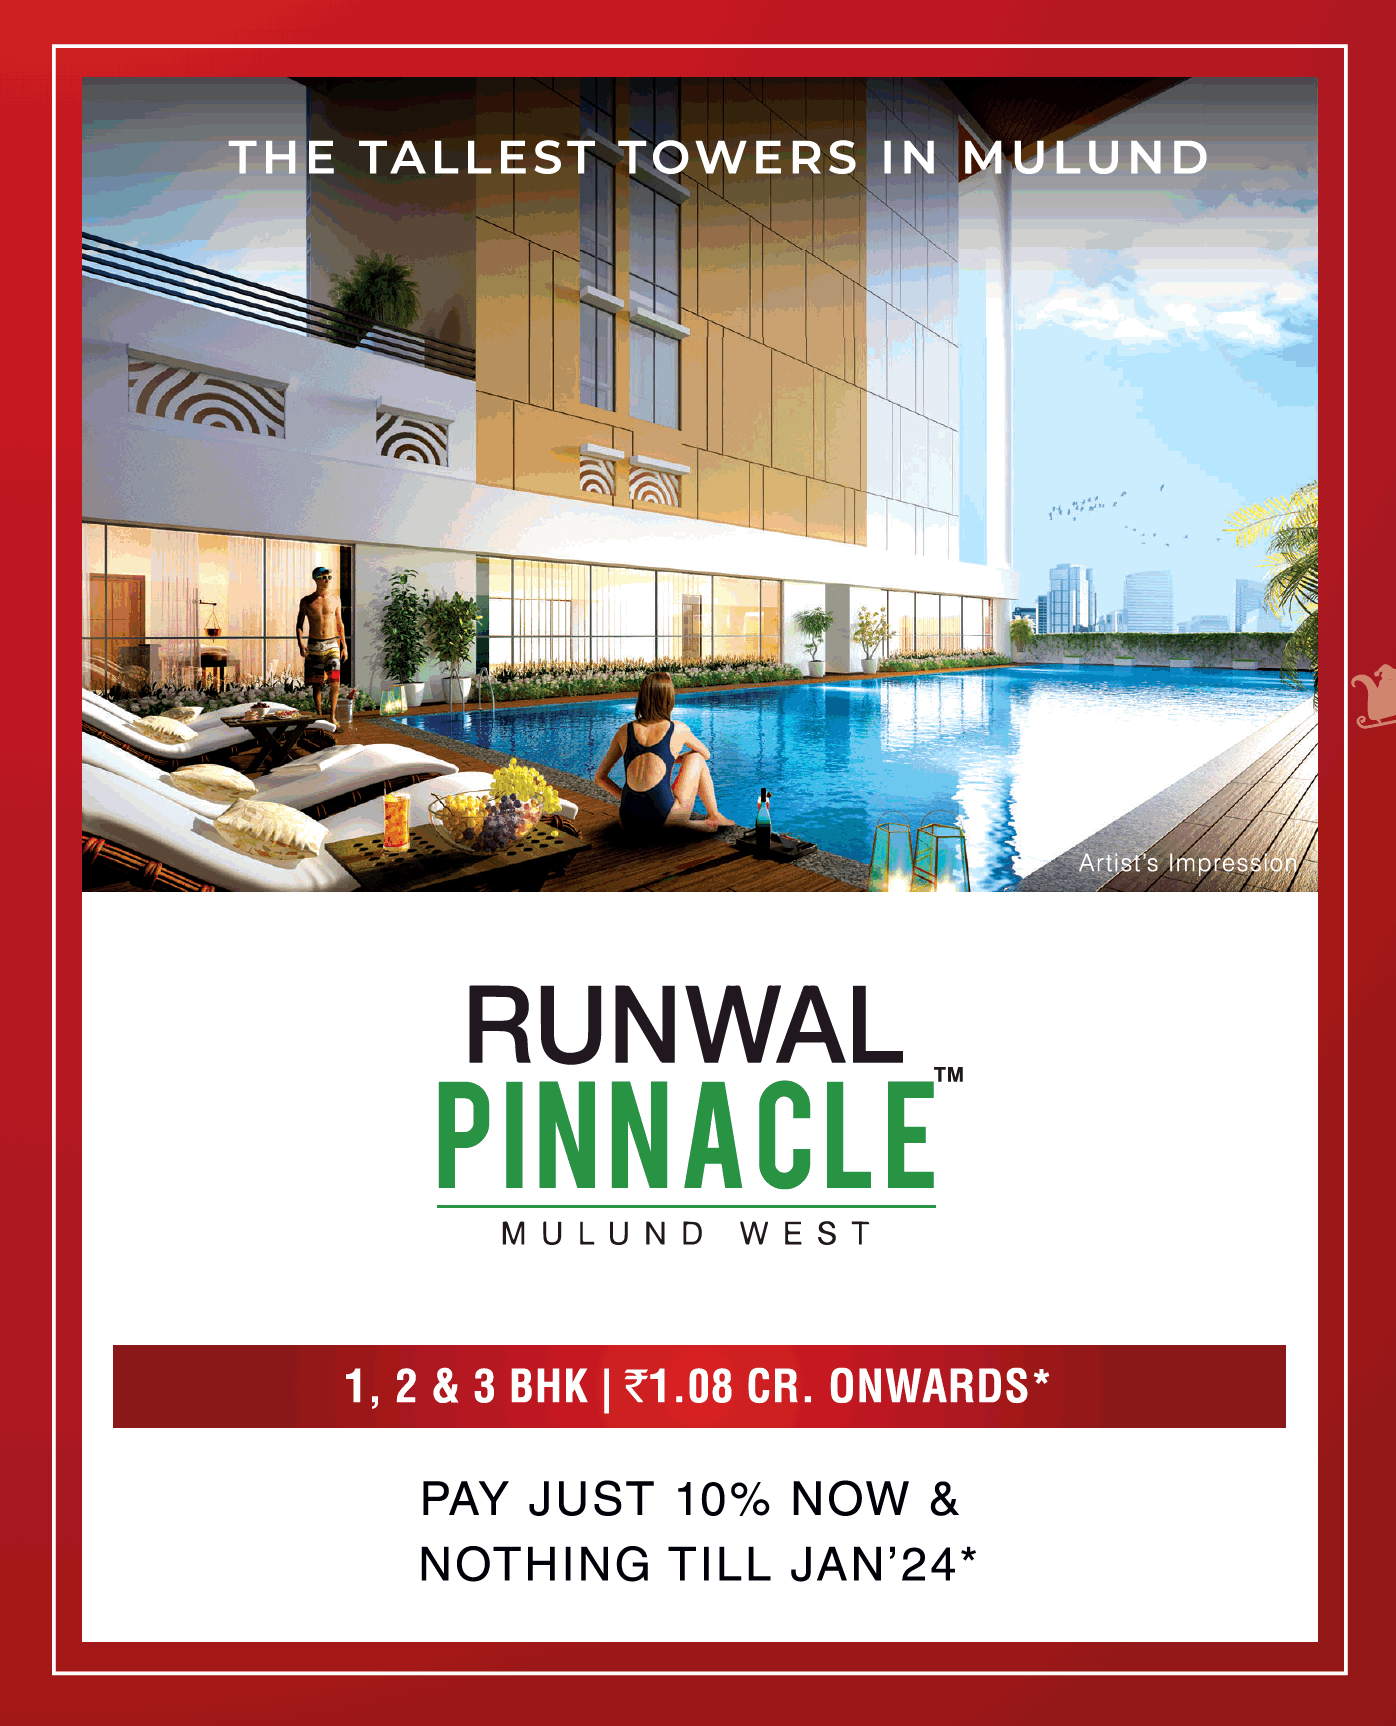 Pay just 10% now & nothing till Jan 24 at Runwal Pinnacle, Mumbai